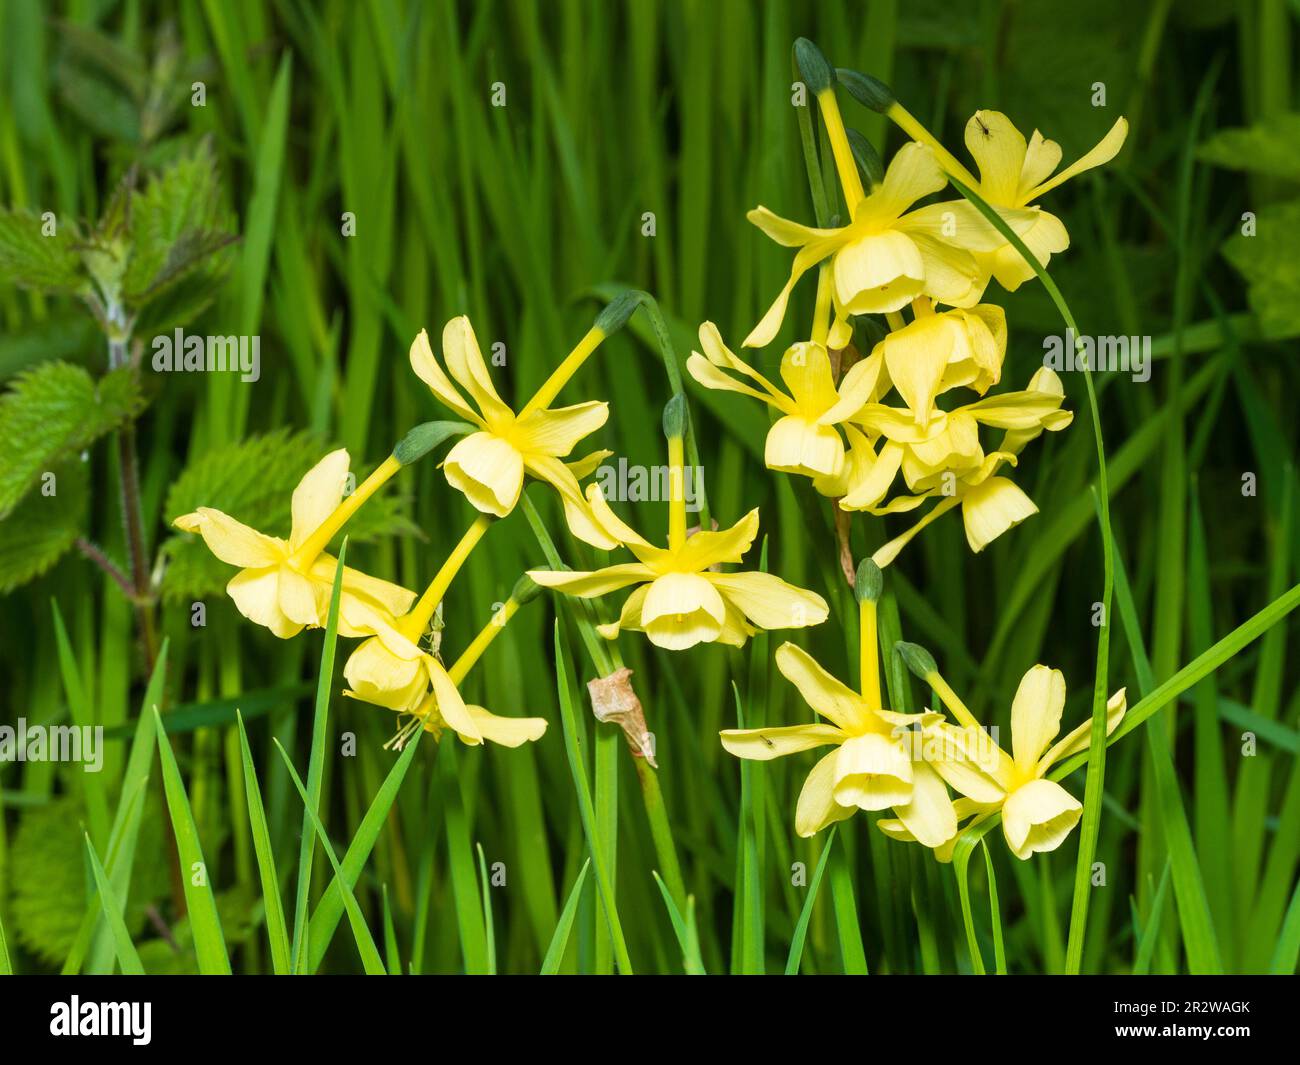 Flores amarillas perfumadas de la primavera tipo triandus floreciente daffodil, Narcisus 'Hawera' Foto de stock